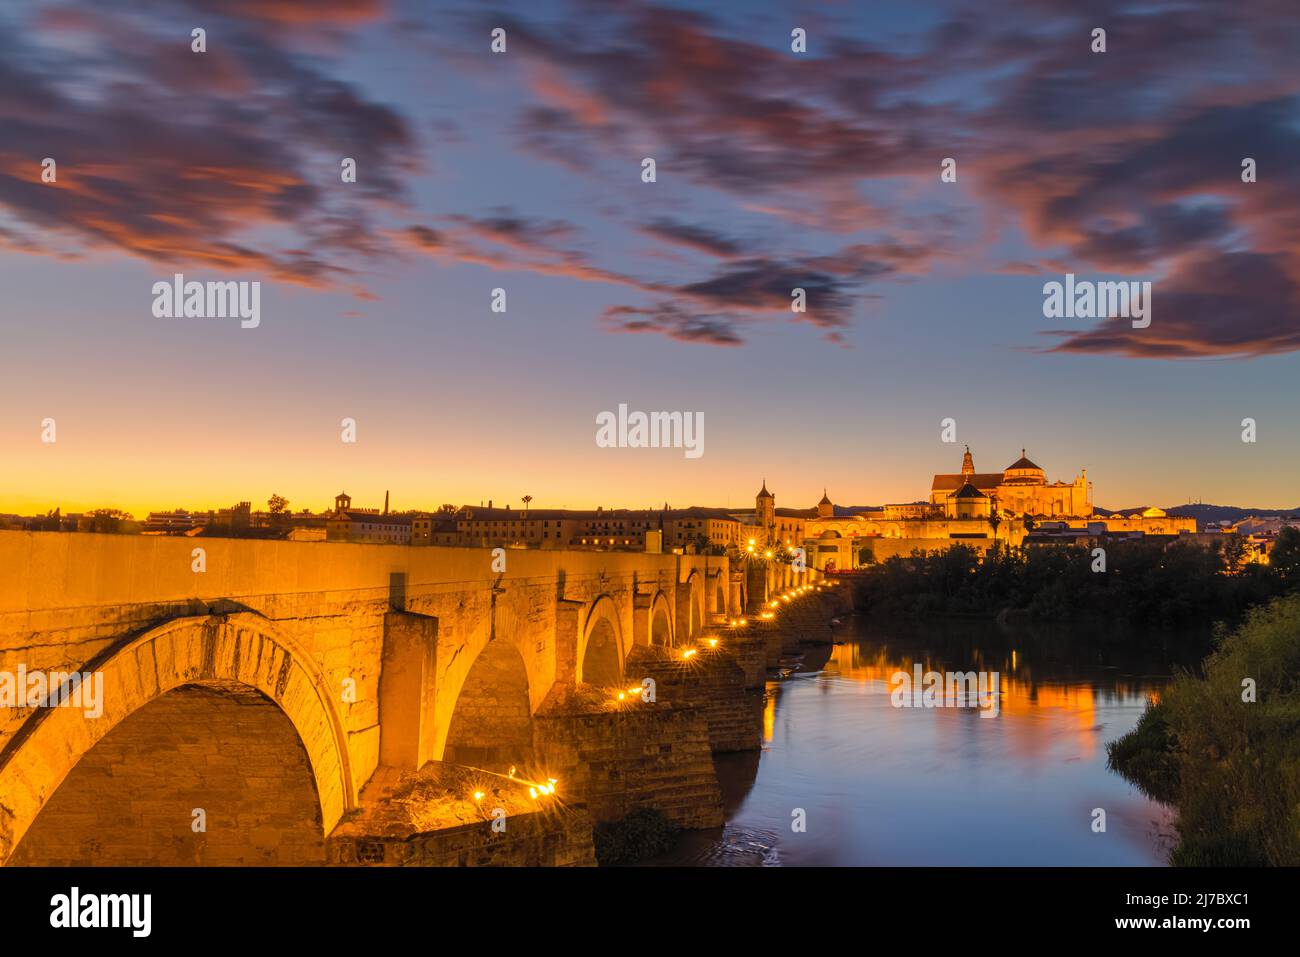 Una noche en el antiguo Puente Romano de Córdoba. Al fondo la Gran Mezquita de Córdoba. Tomada en la ciudad de Córdoba, Andalucía, en t Foto de stock